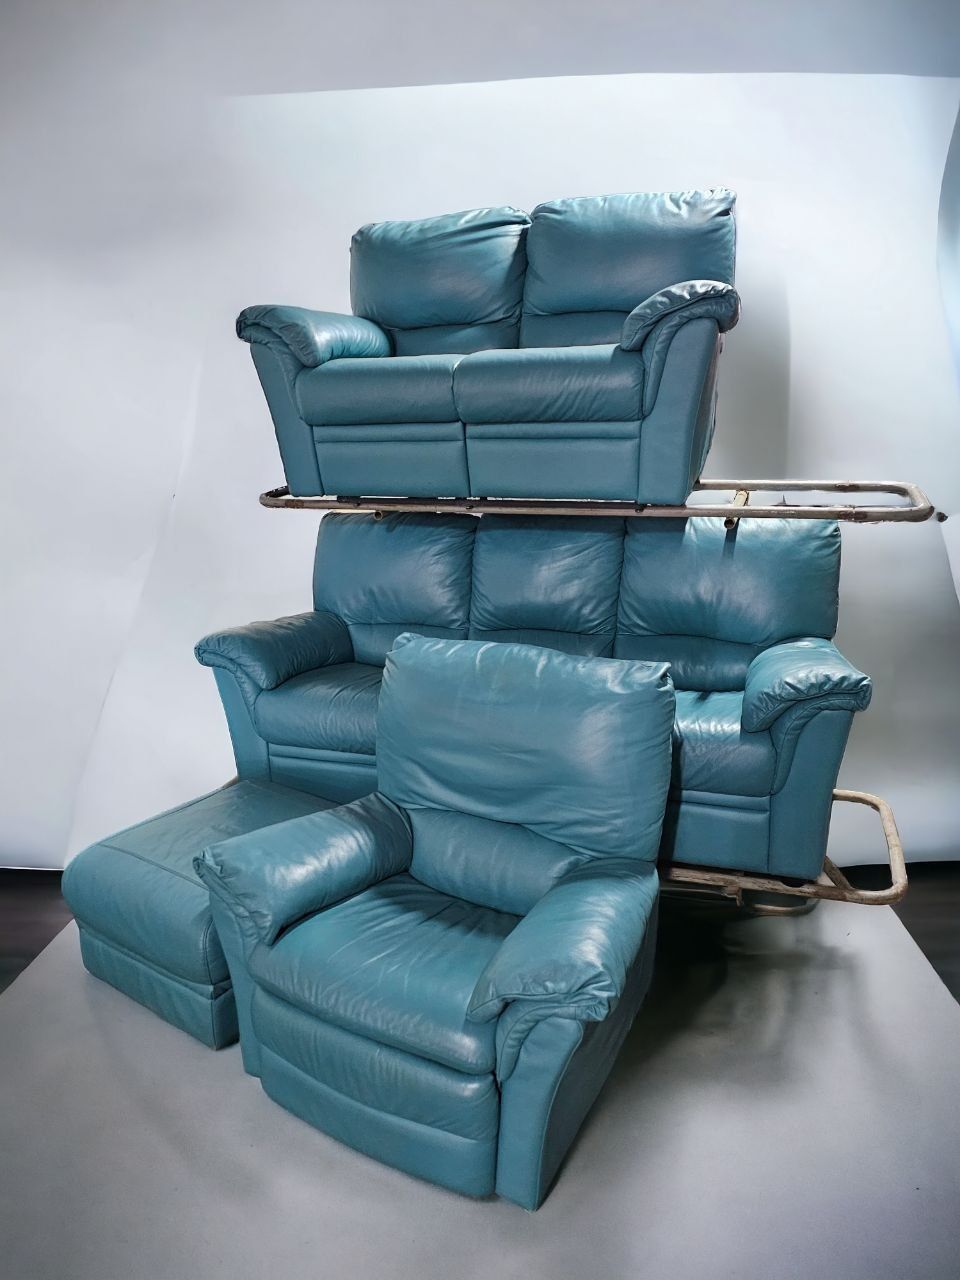 Кожаные диваны  двух , трехместный   и  кресло реклайнеры.   Бирюзовый